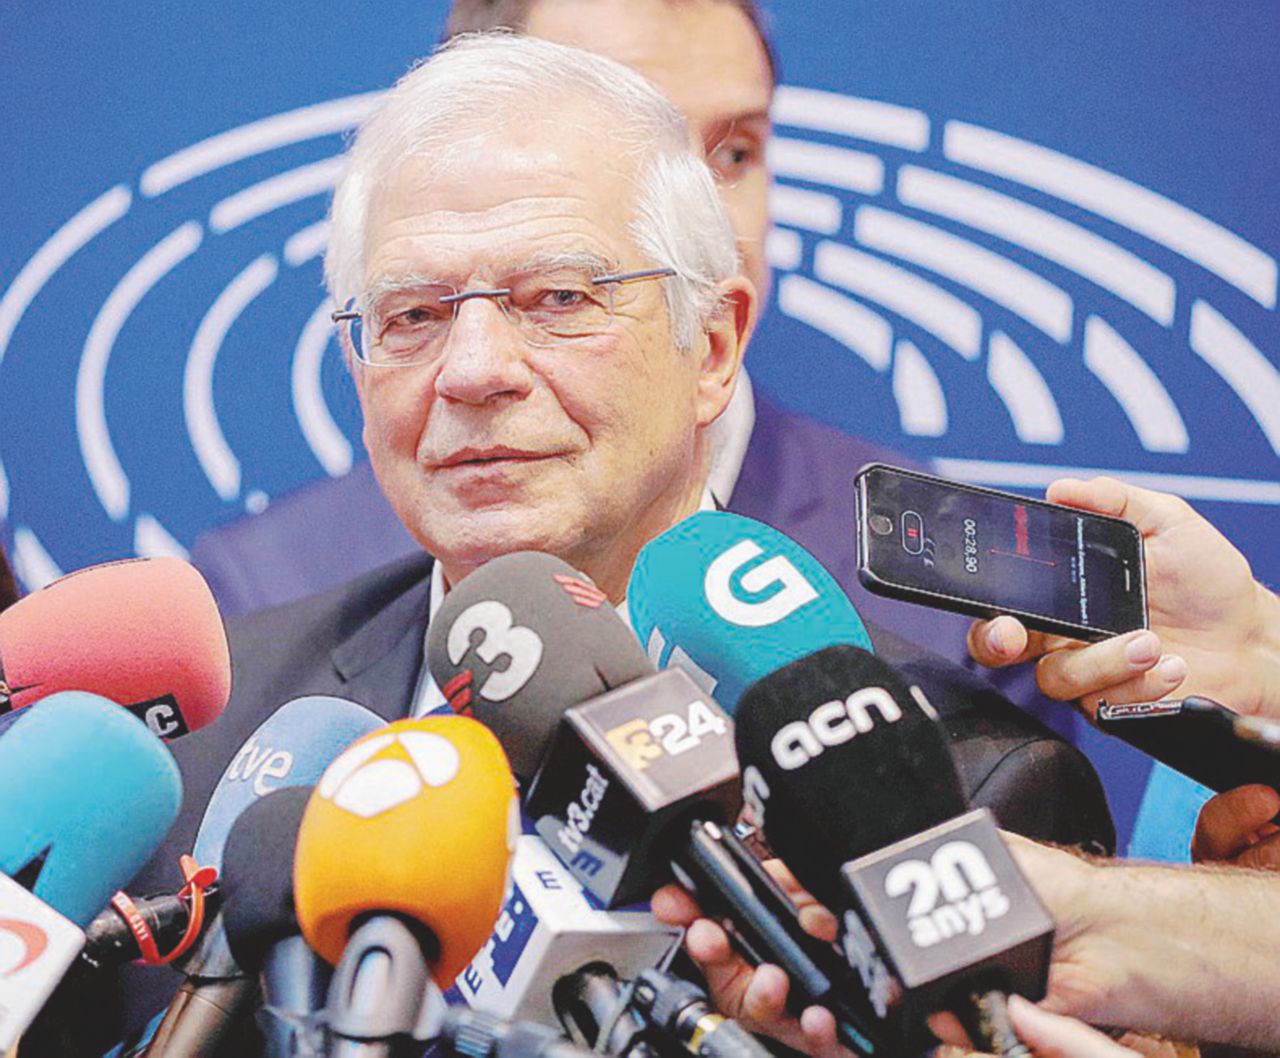 Copertina di Madrid-Catalogna, faida anche a Bruxelles: Borrell “spia” il nemico e rischia la nomina